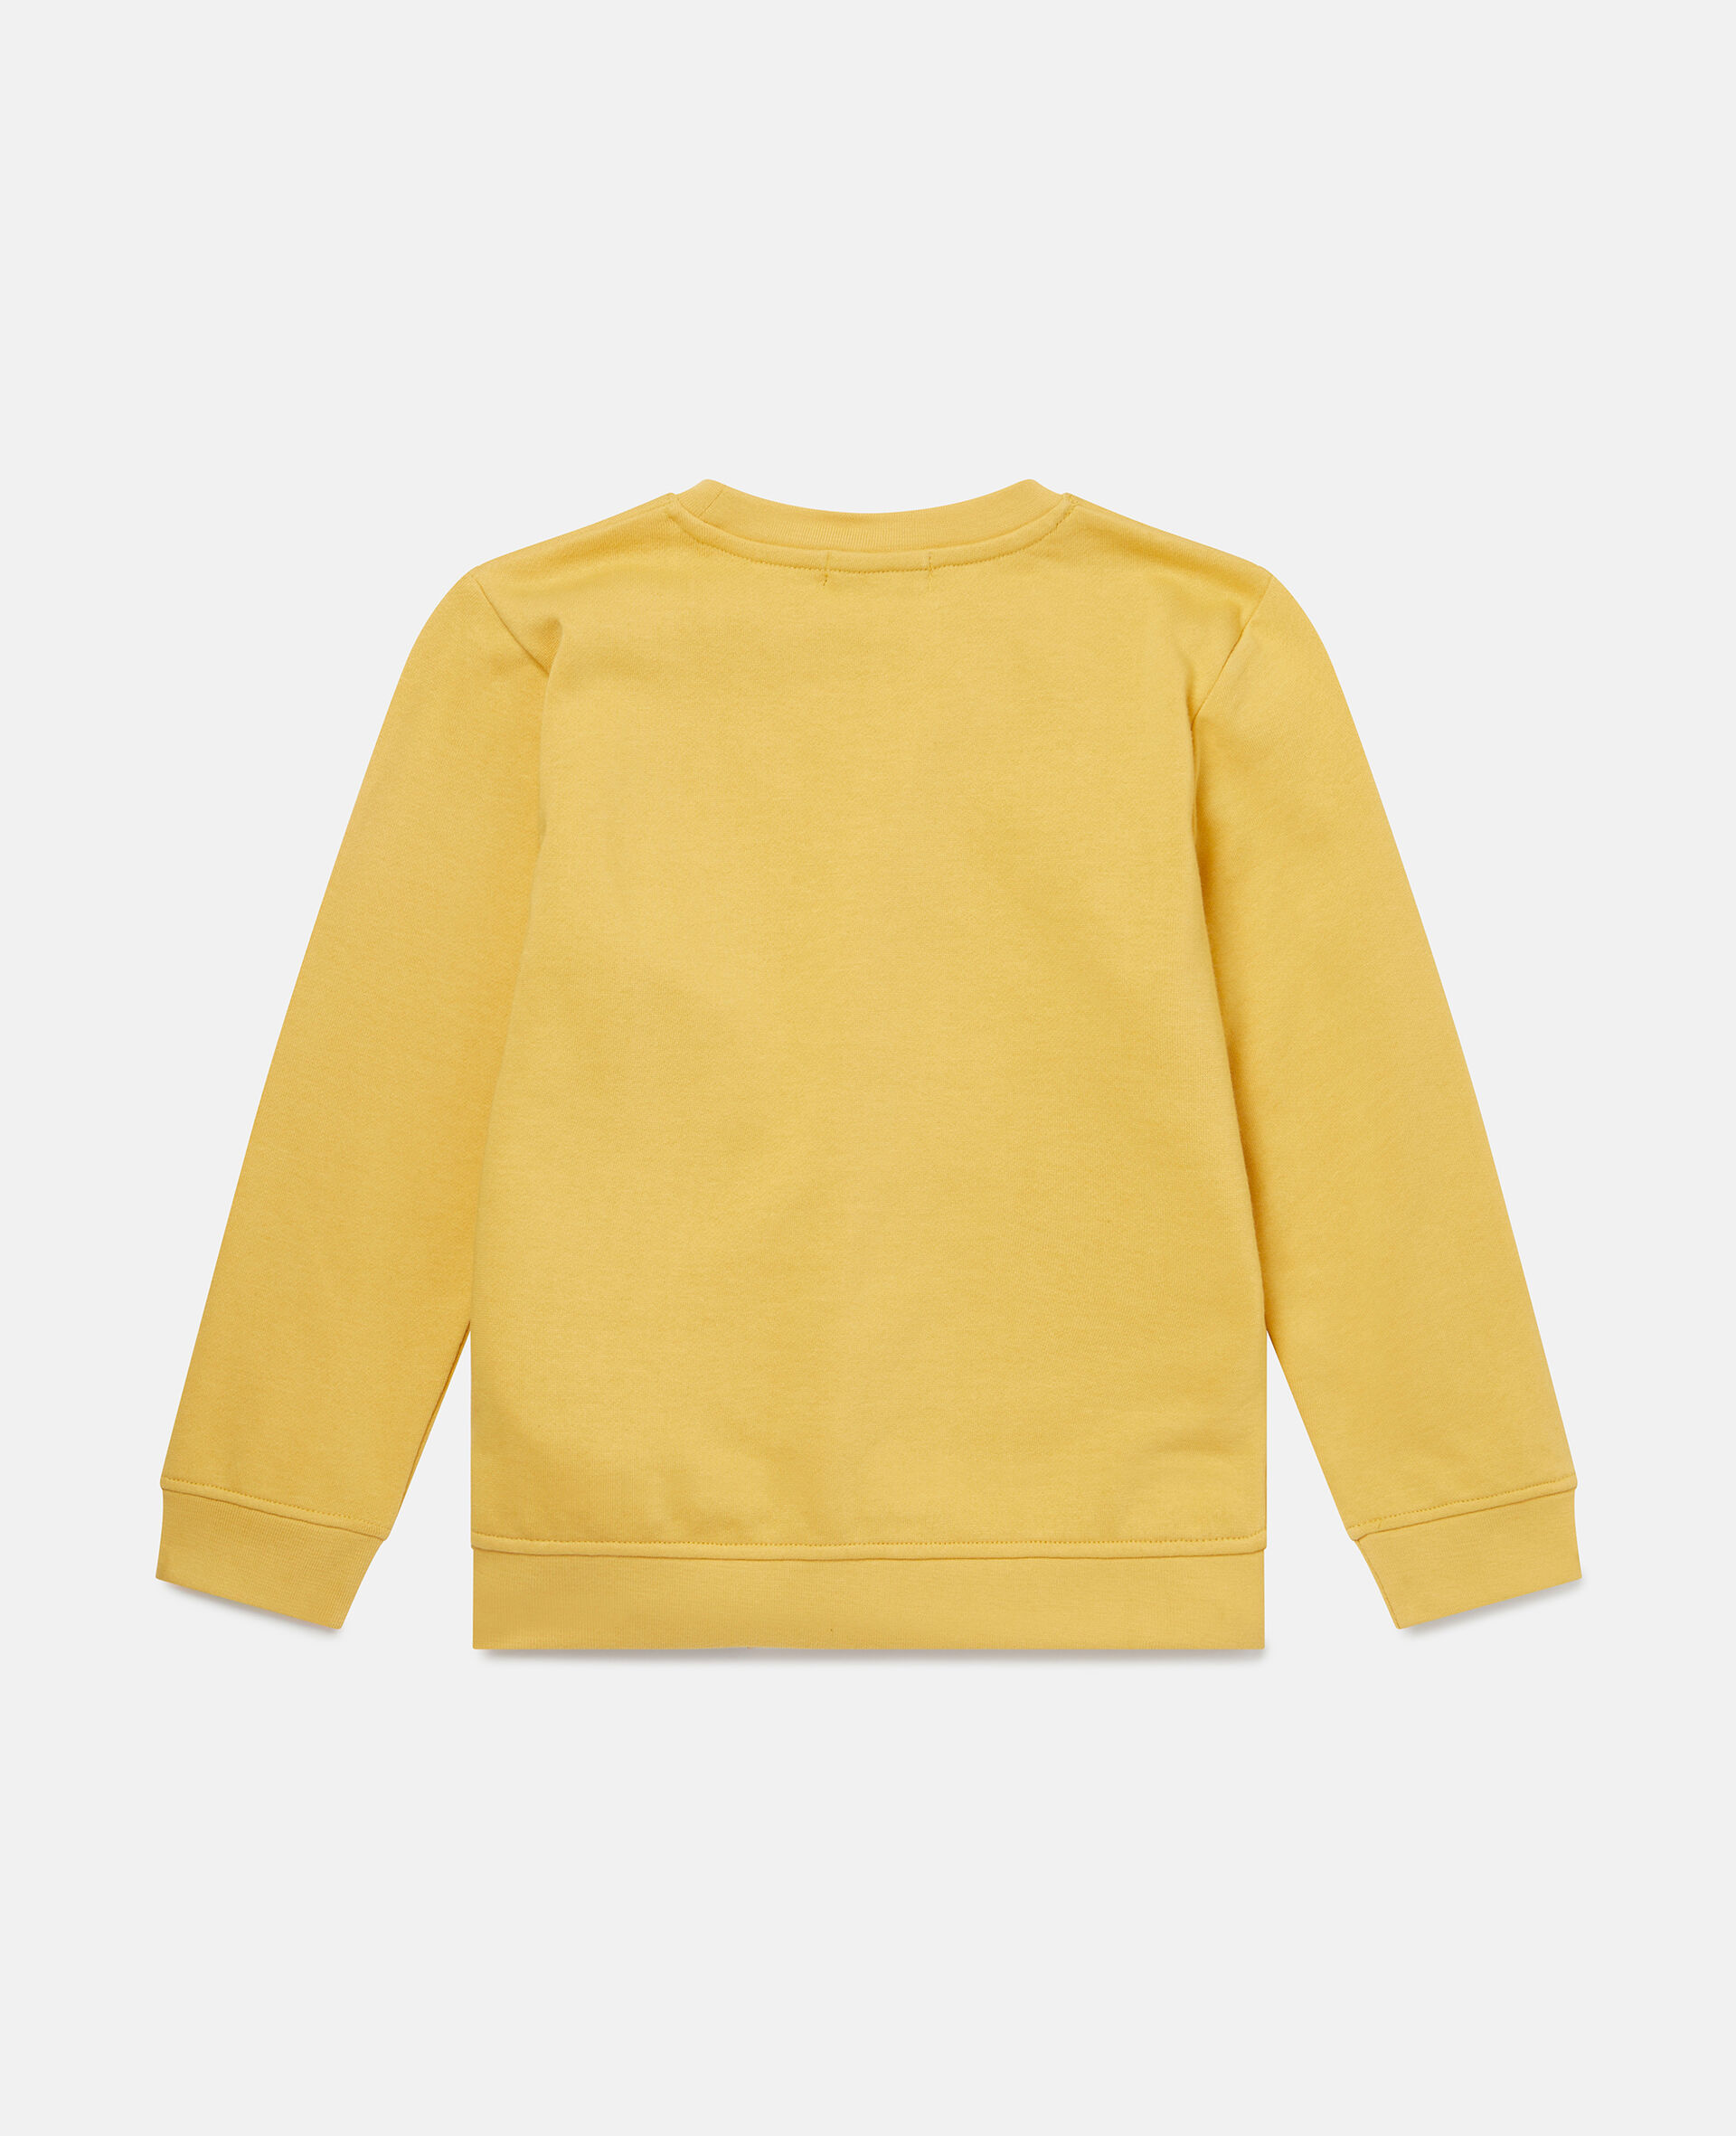 Double Fox Print Cotton Fleece Sweatshirt-Yellow-large image number 2